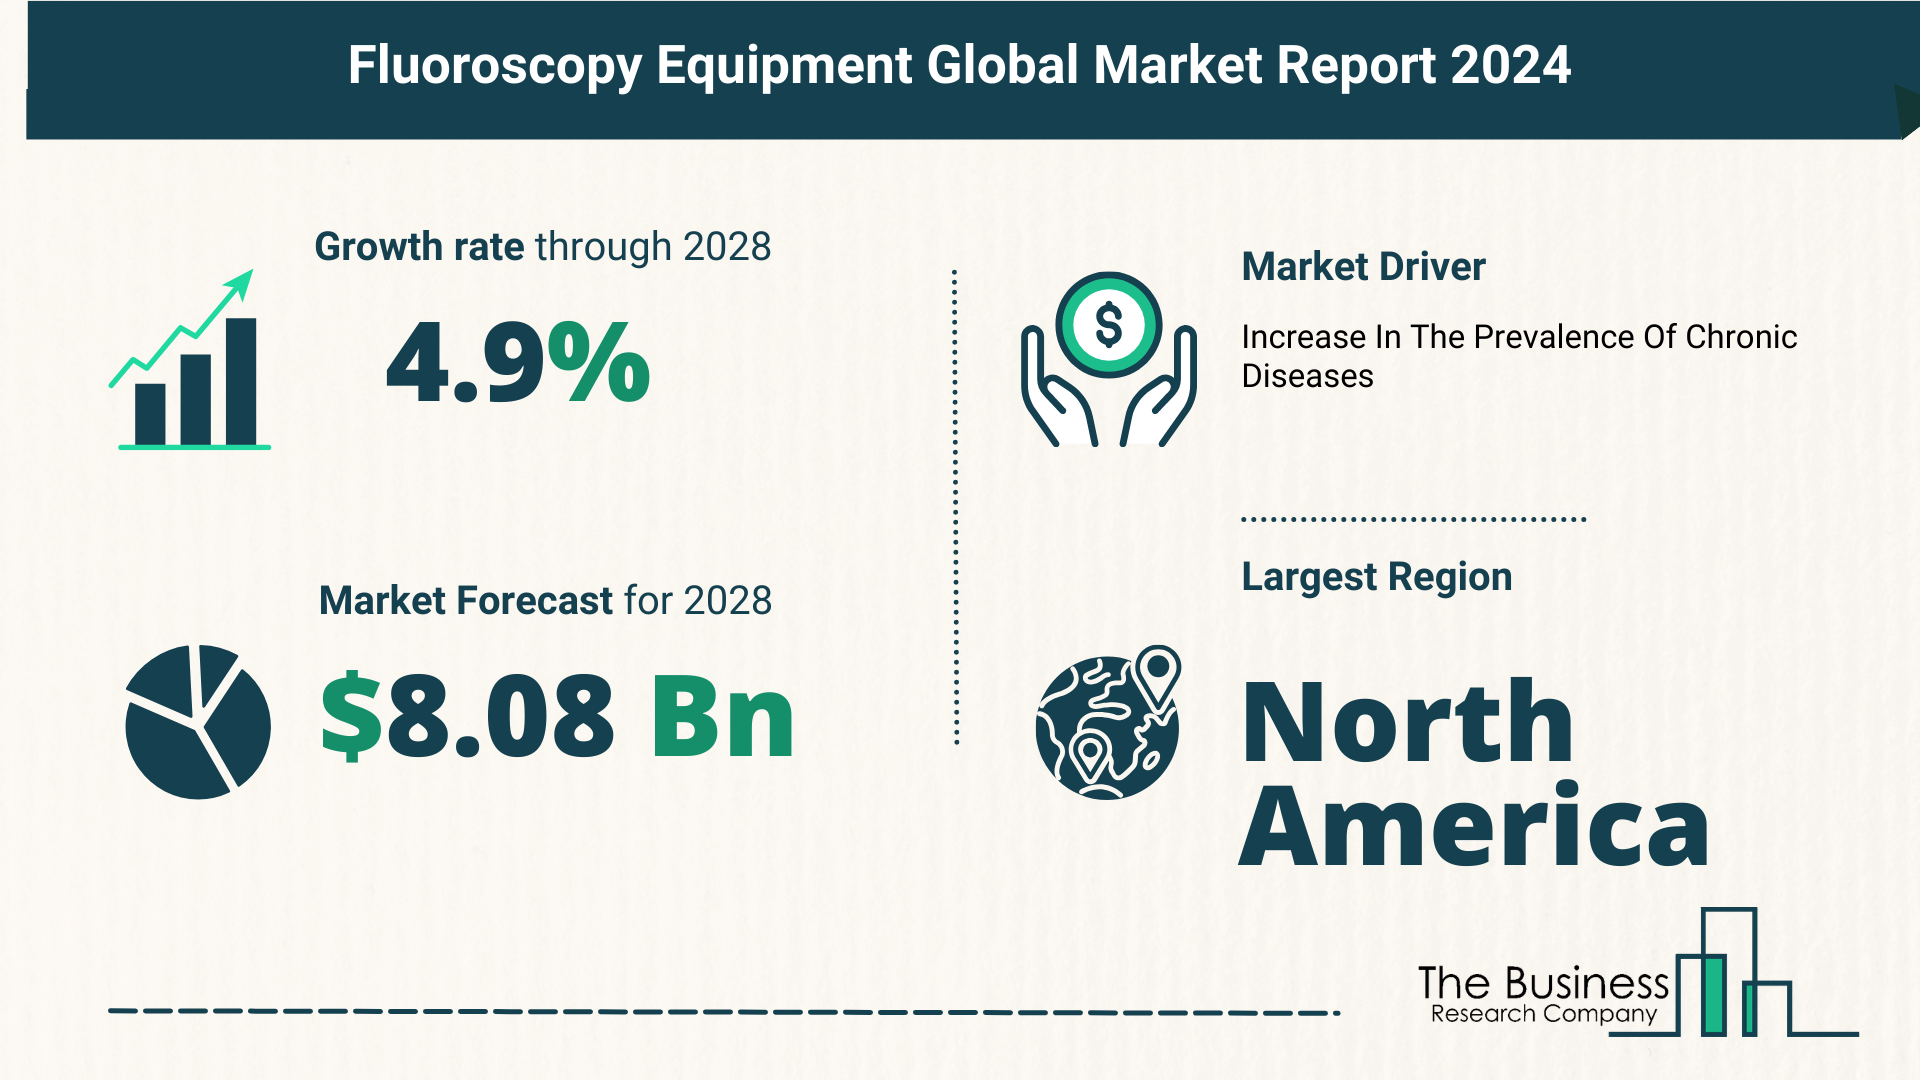 Global Fluoroscopy Equipment Market